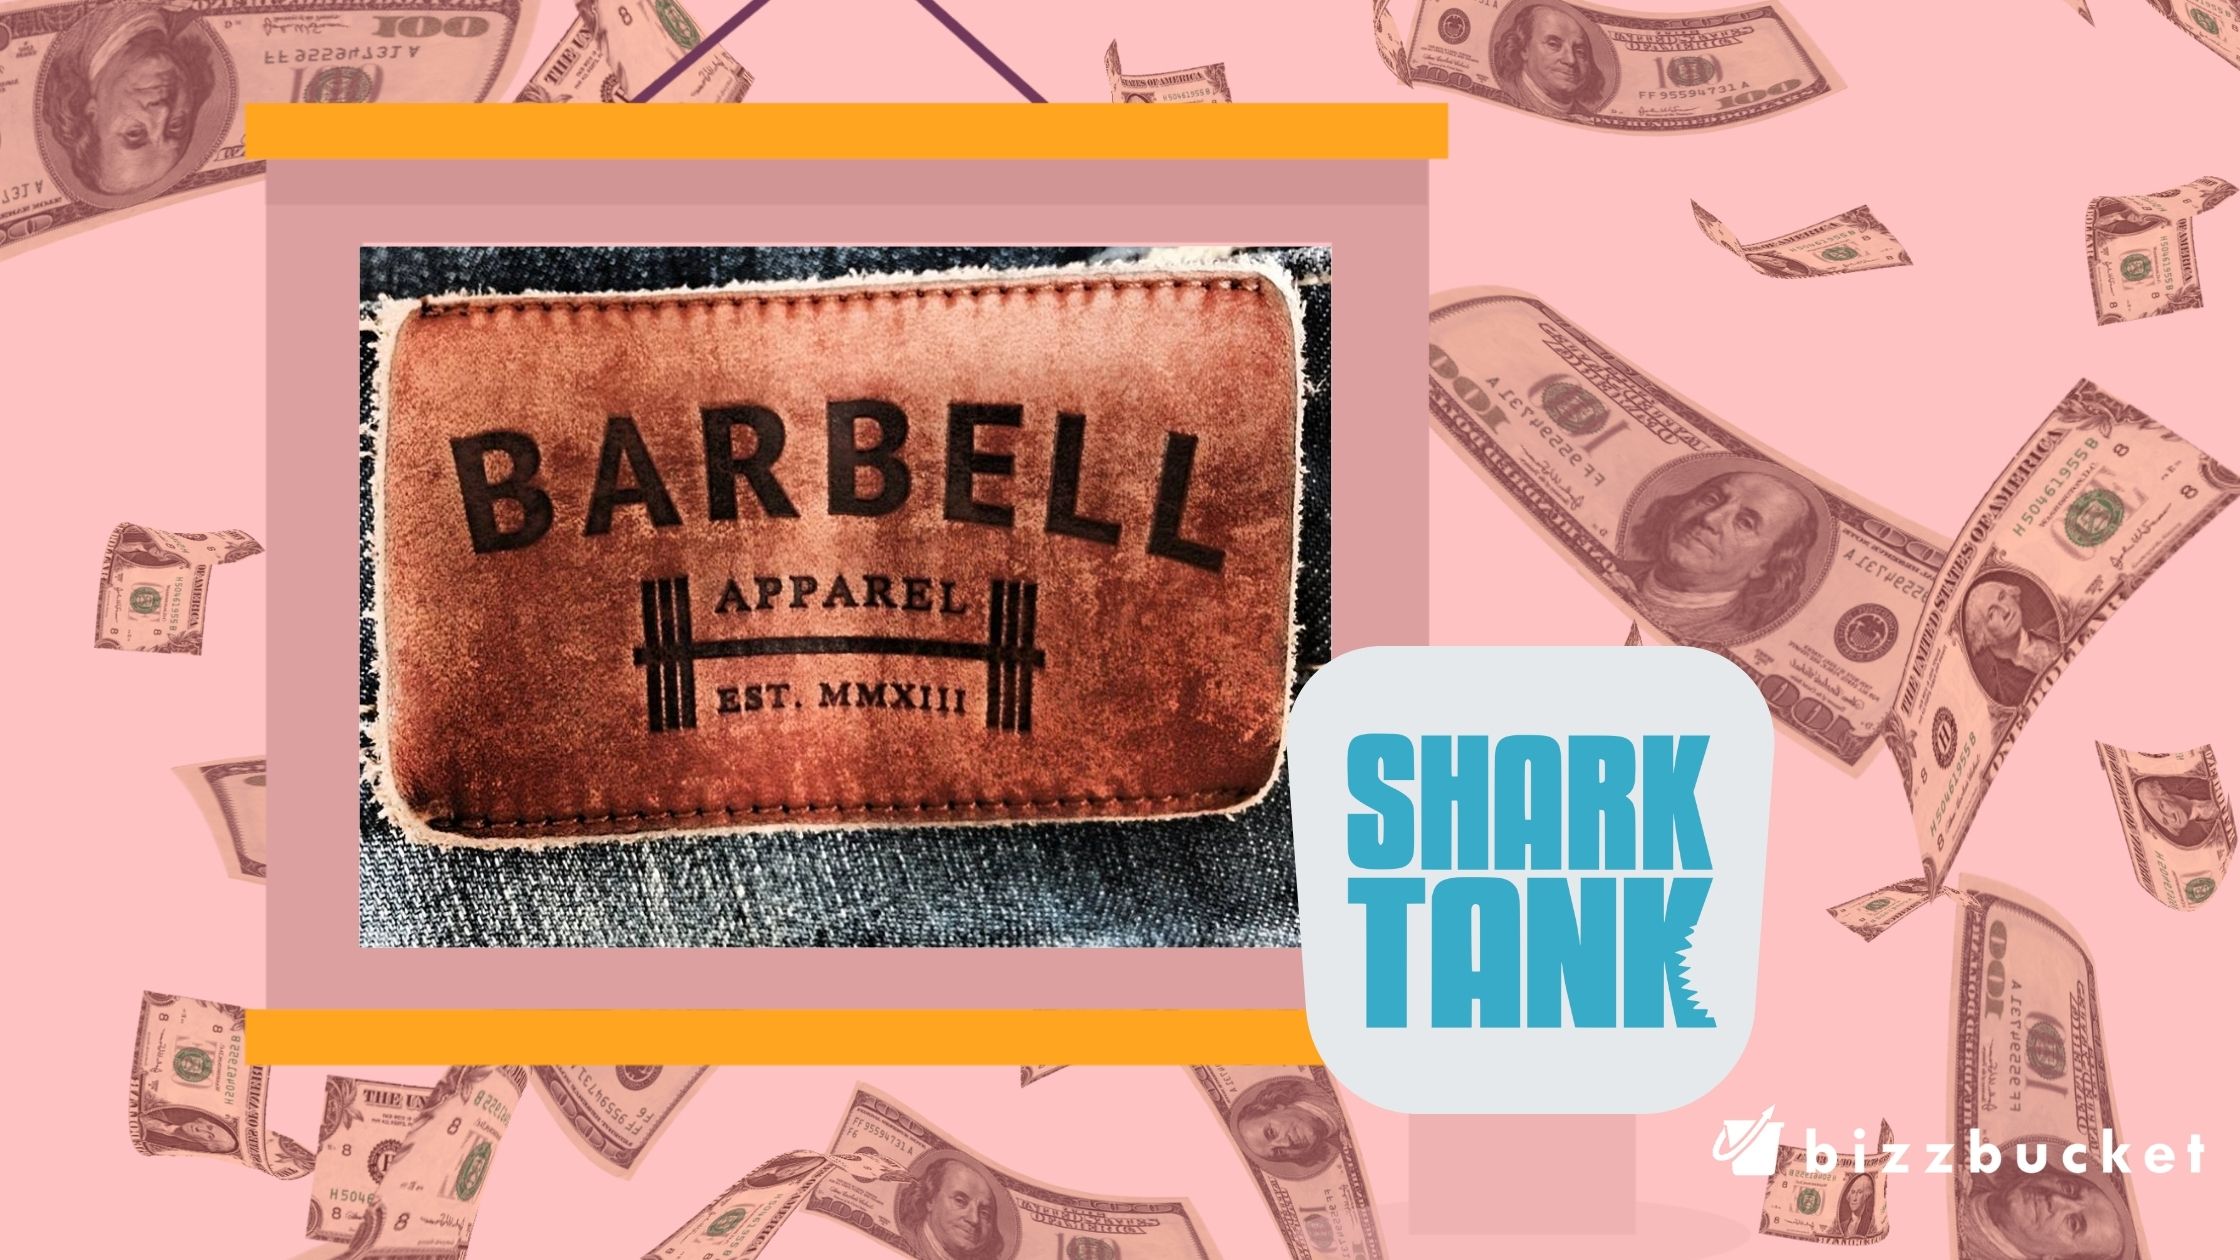 Barbell Apparel shark tank update